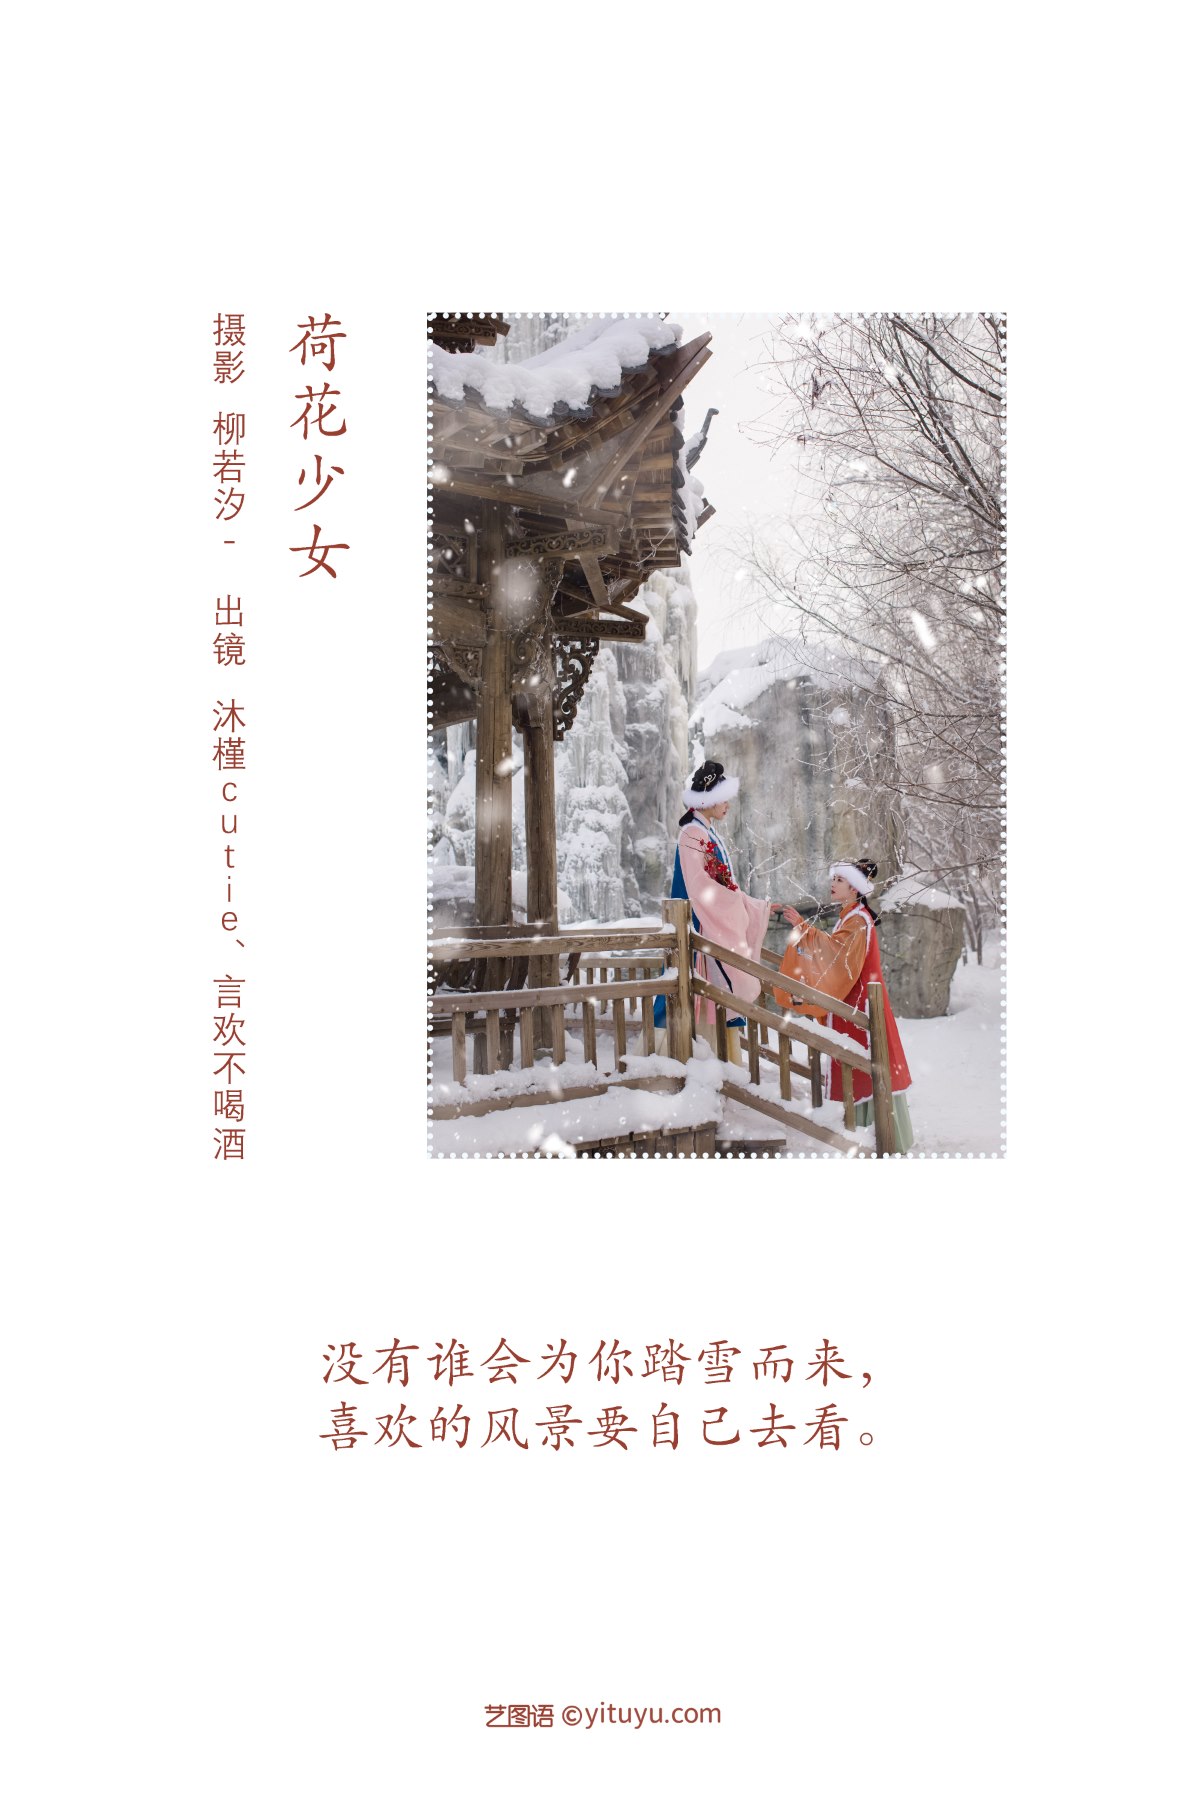 YiTuYu艺图语 Vol 2208 Yan Huan Bu He Jiu 0001 3622458162.jpg